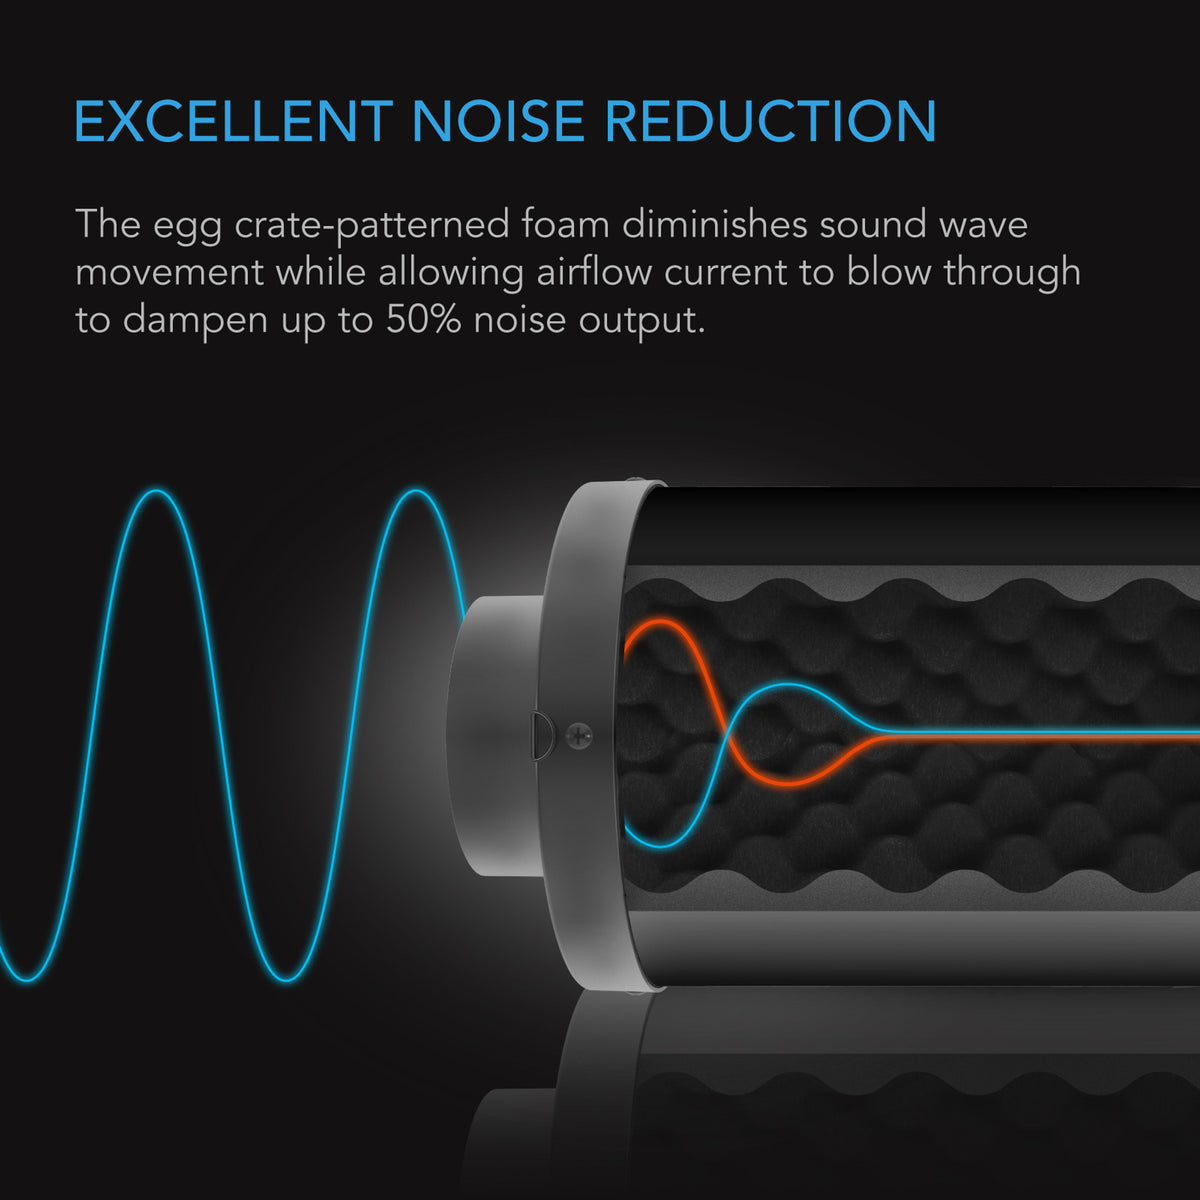 Excellent noise reduction